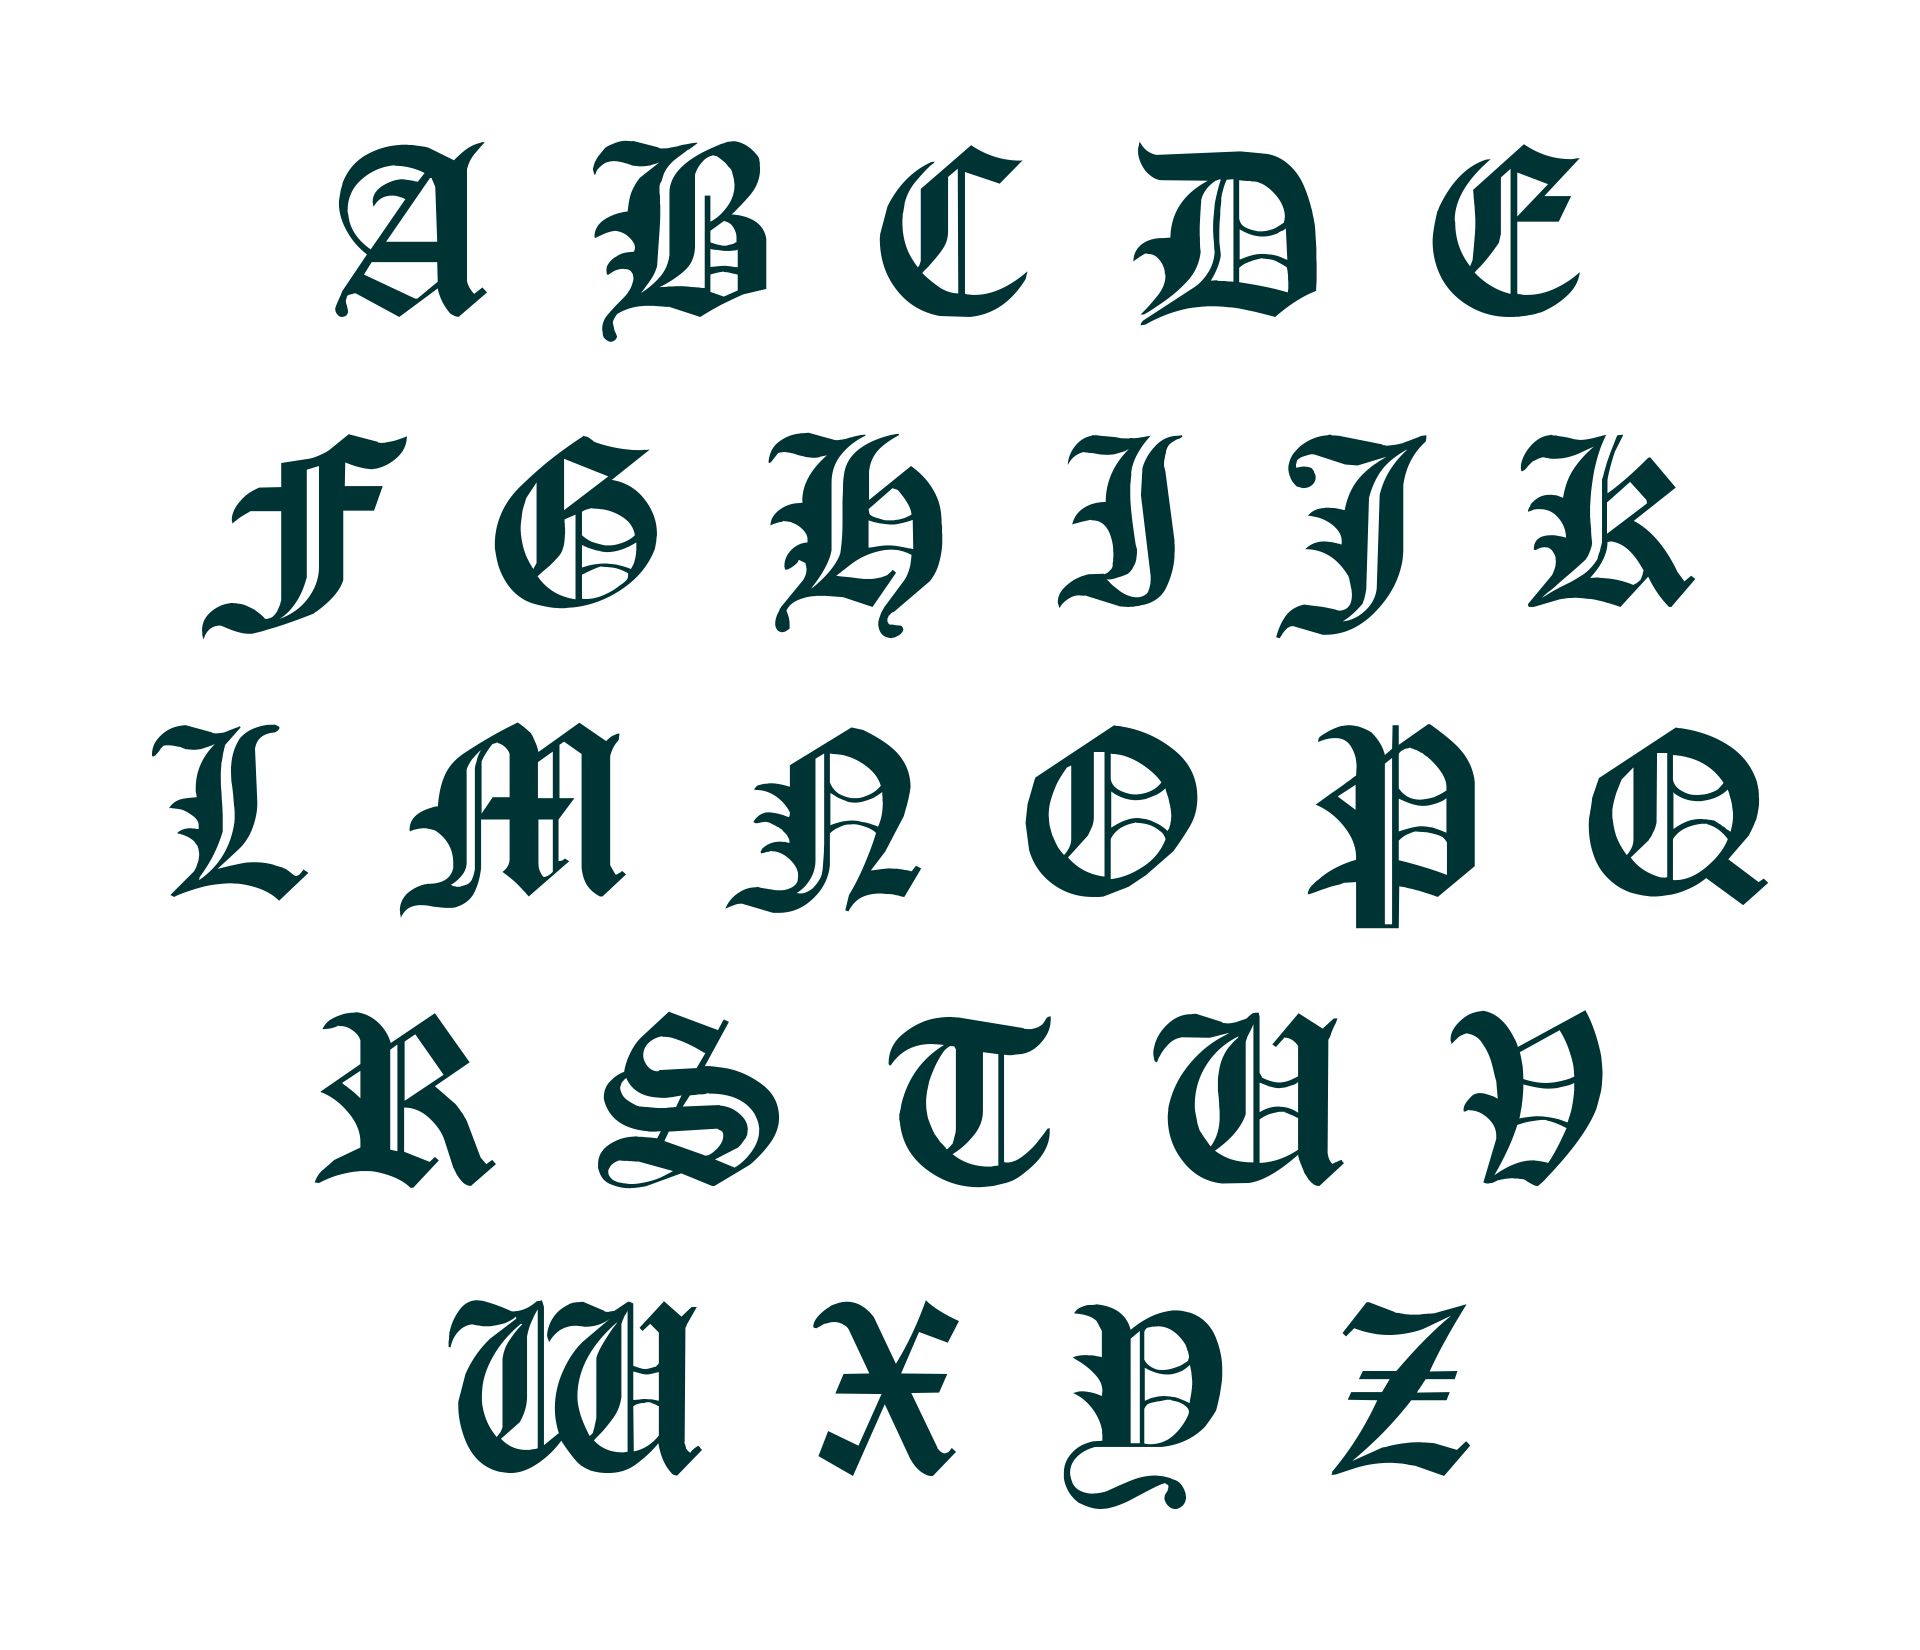 Printable Old English Alphabet A-Z_64398